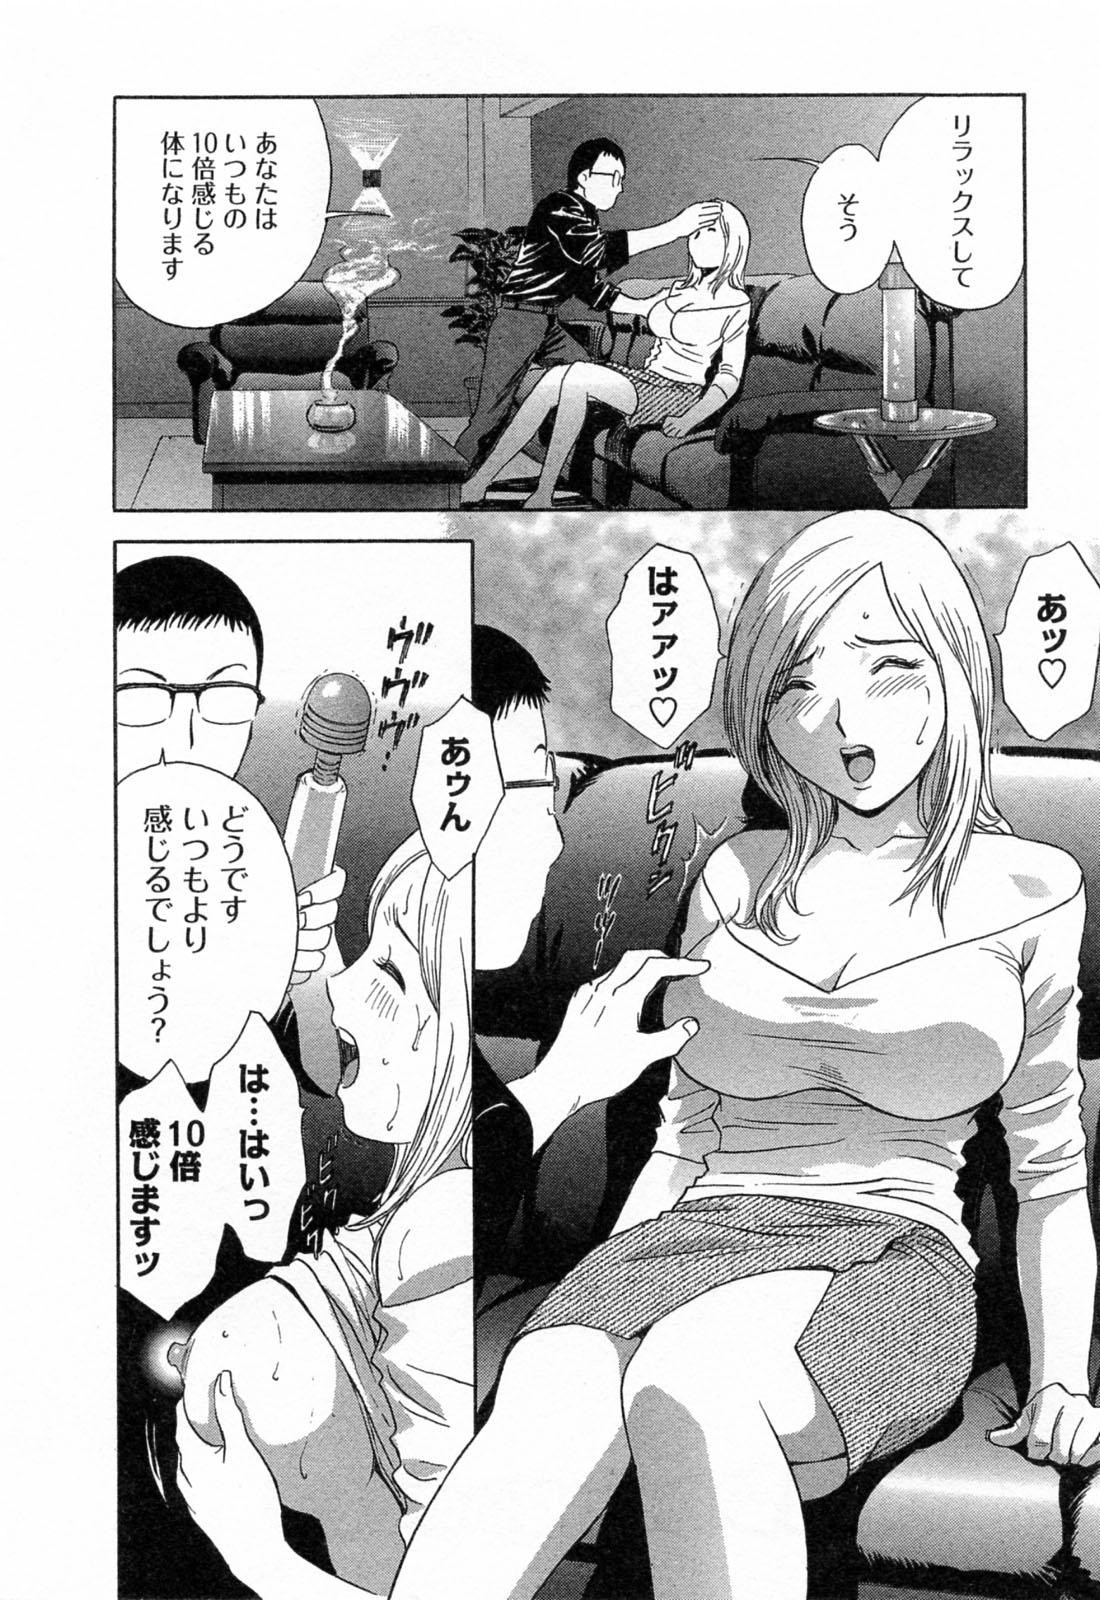 [Hidemaru] Mo-Retsu! Boin Sensei (Boing Boing Teacher) Vol.4 135